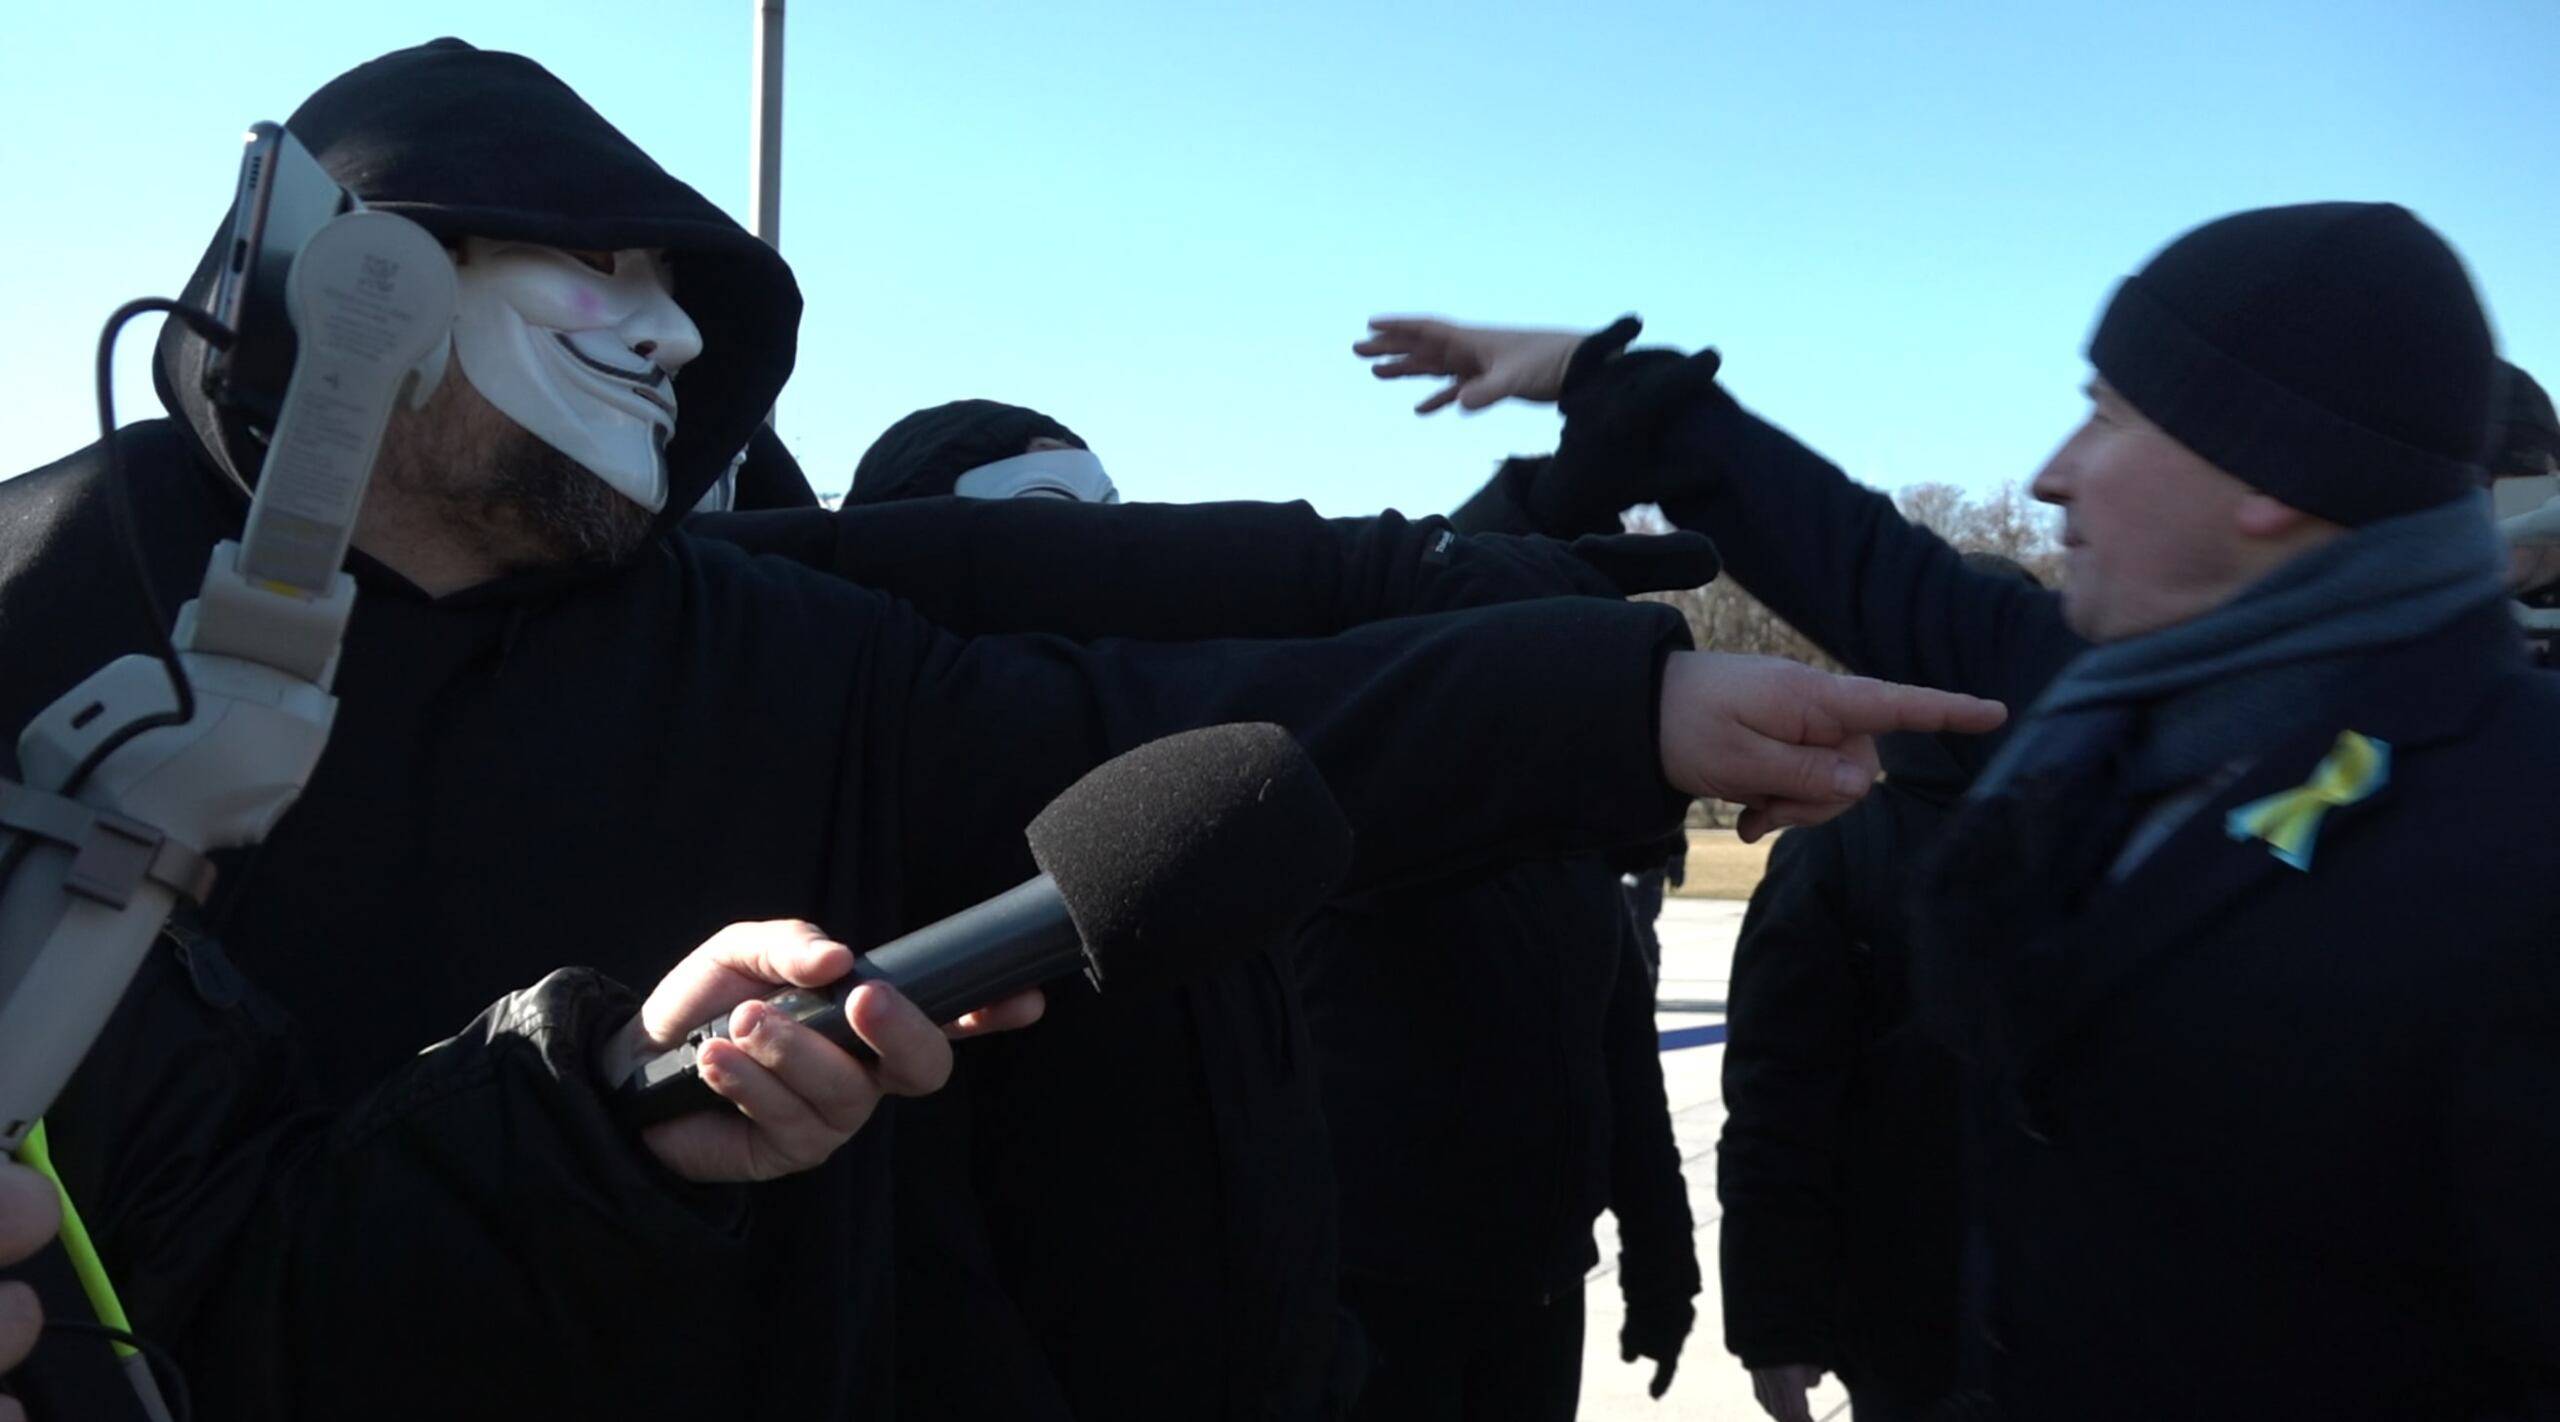 Bartłomiej Wróblewski wyciąga rękę, żeby zdjąć maskę aktywistce